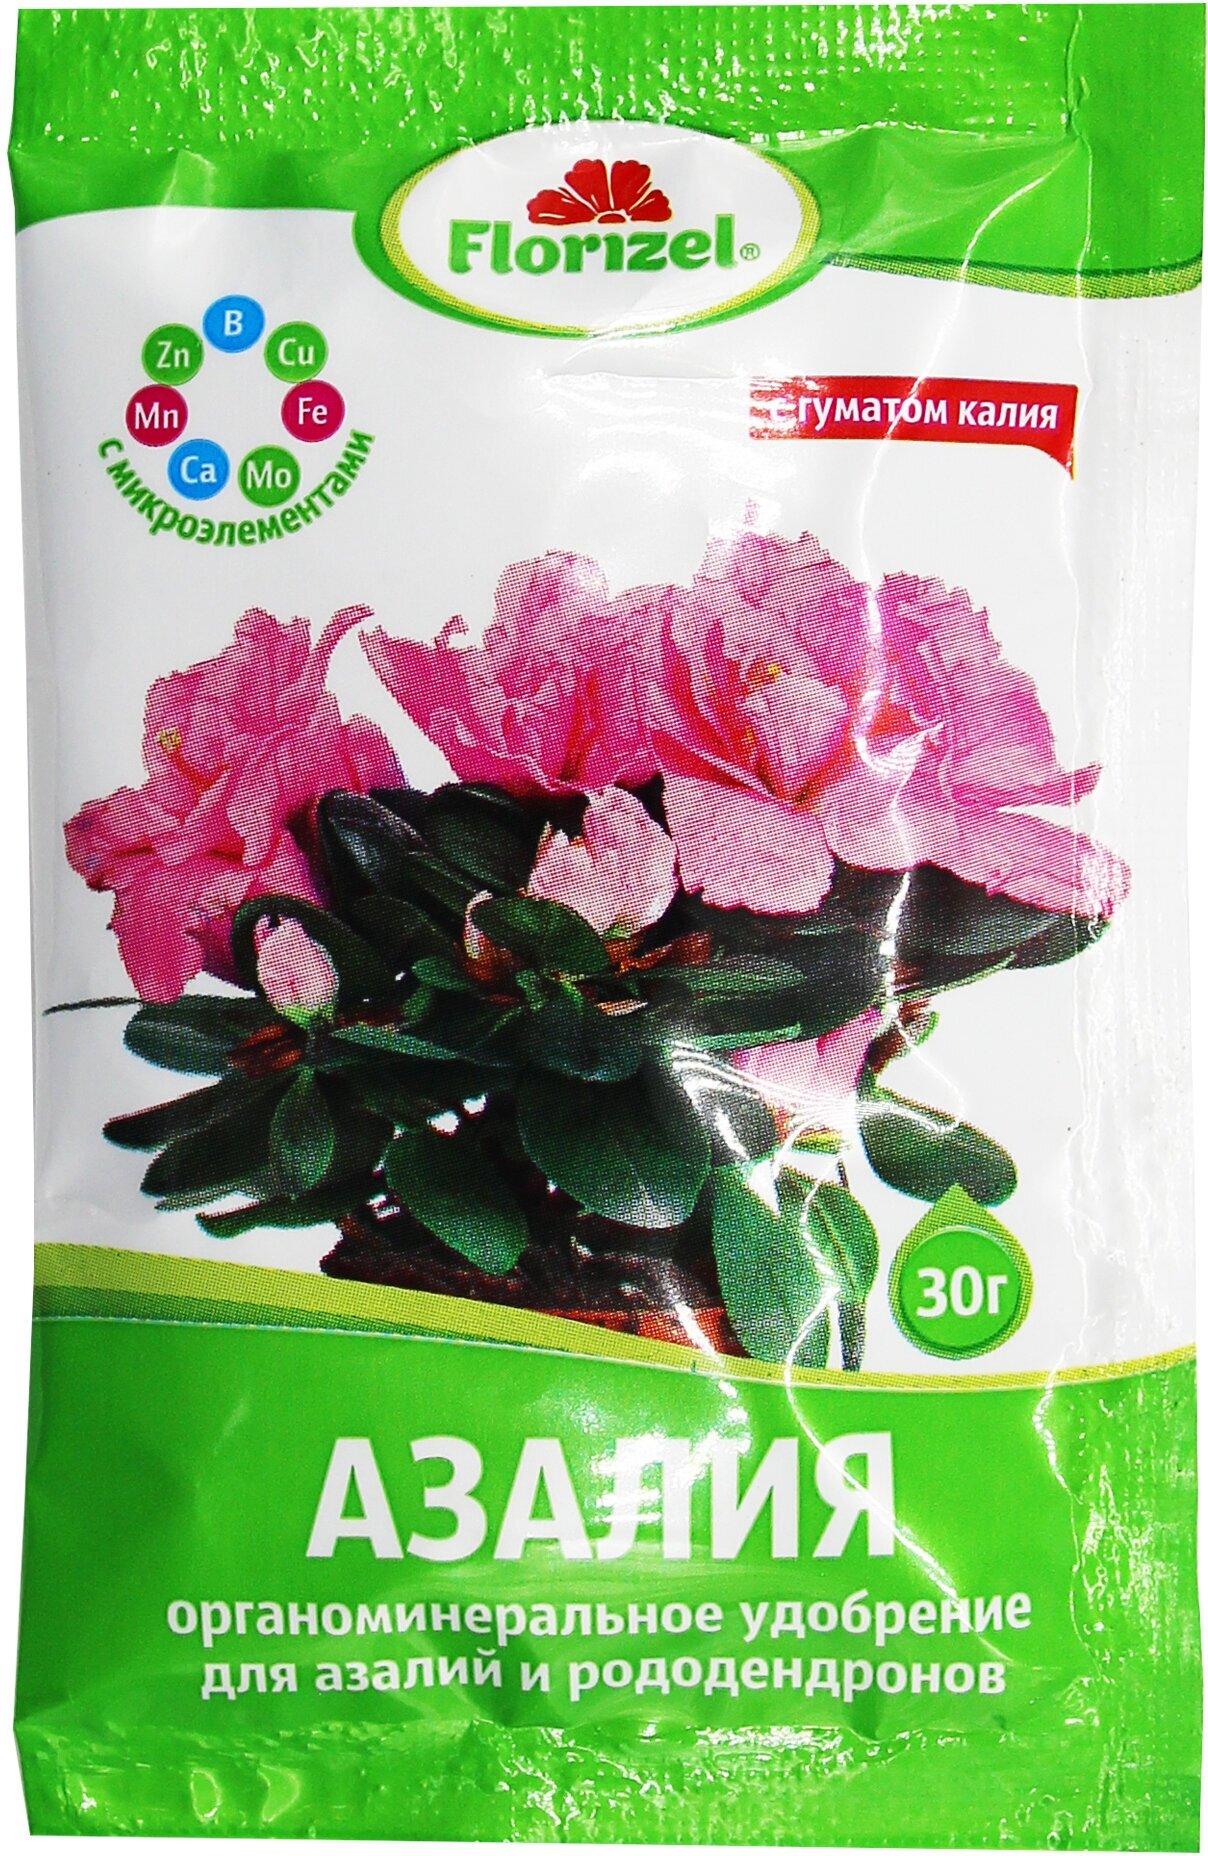 Удобрение Florizel ОМУ для азалий и рододендронов 0.03 кг